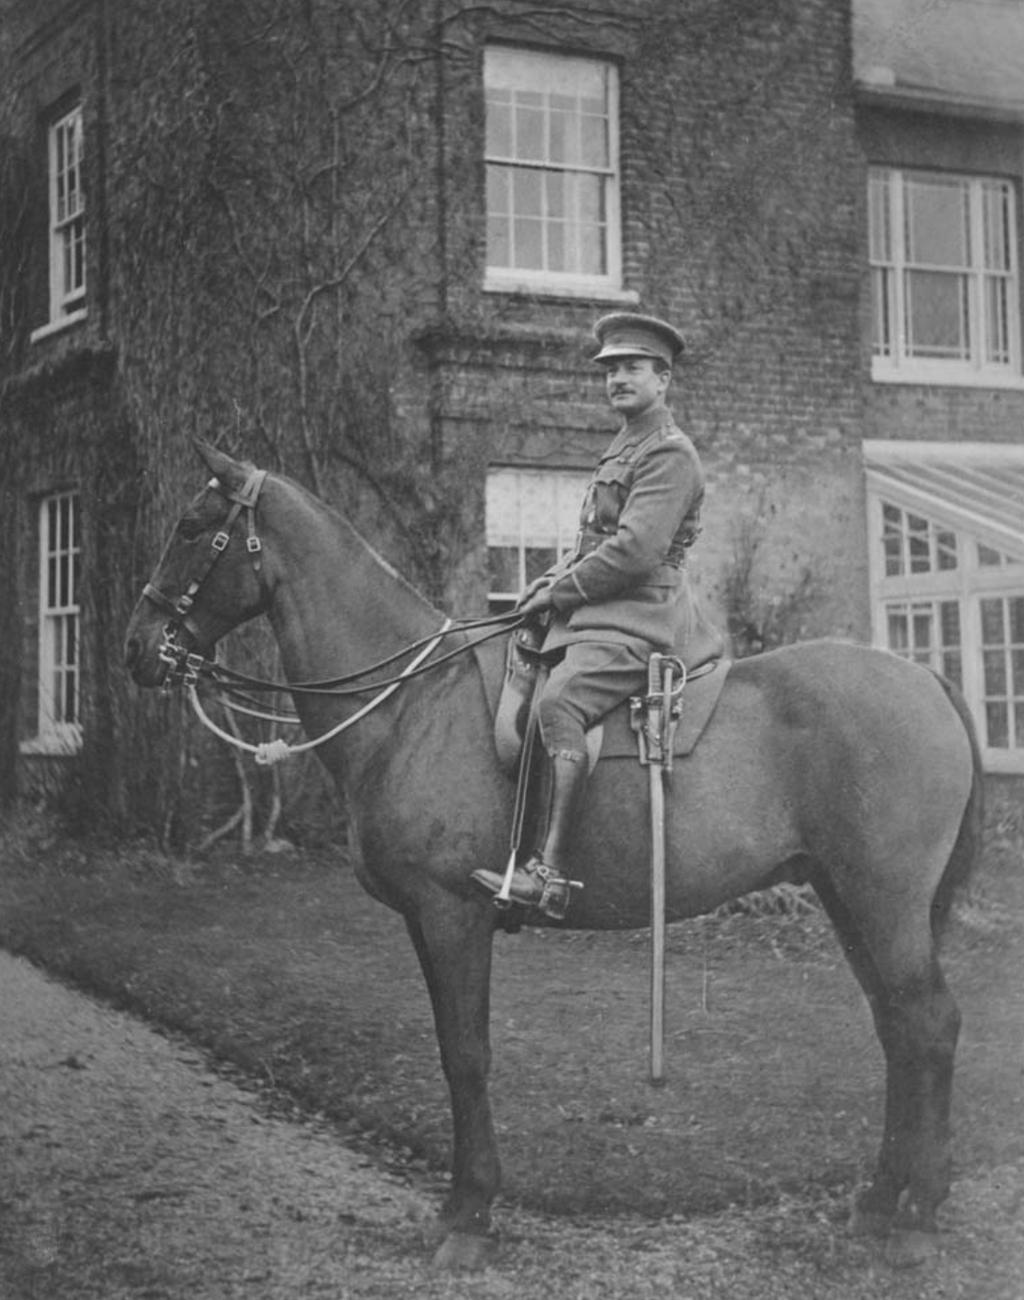 Major Frederick Rush, circa World War